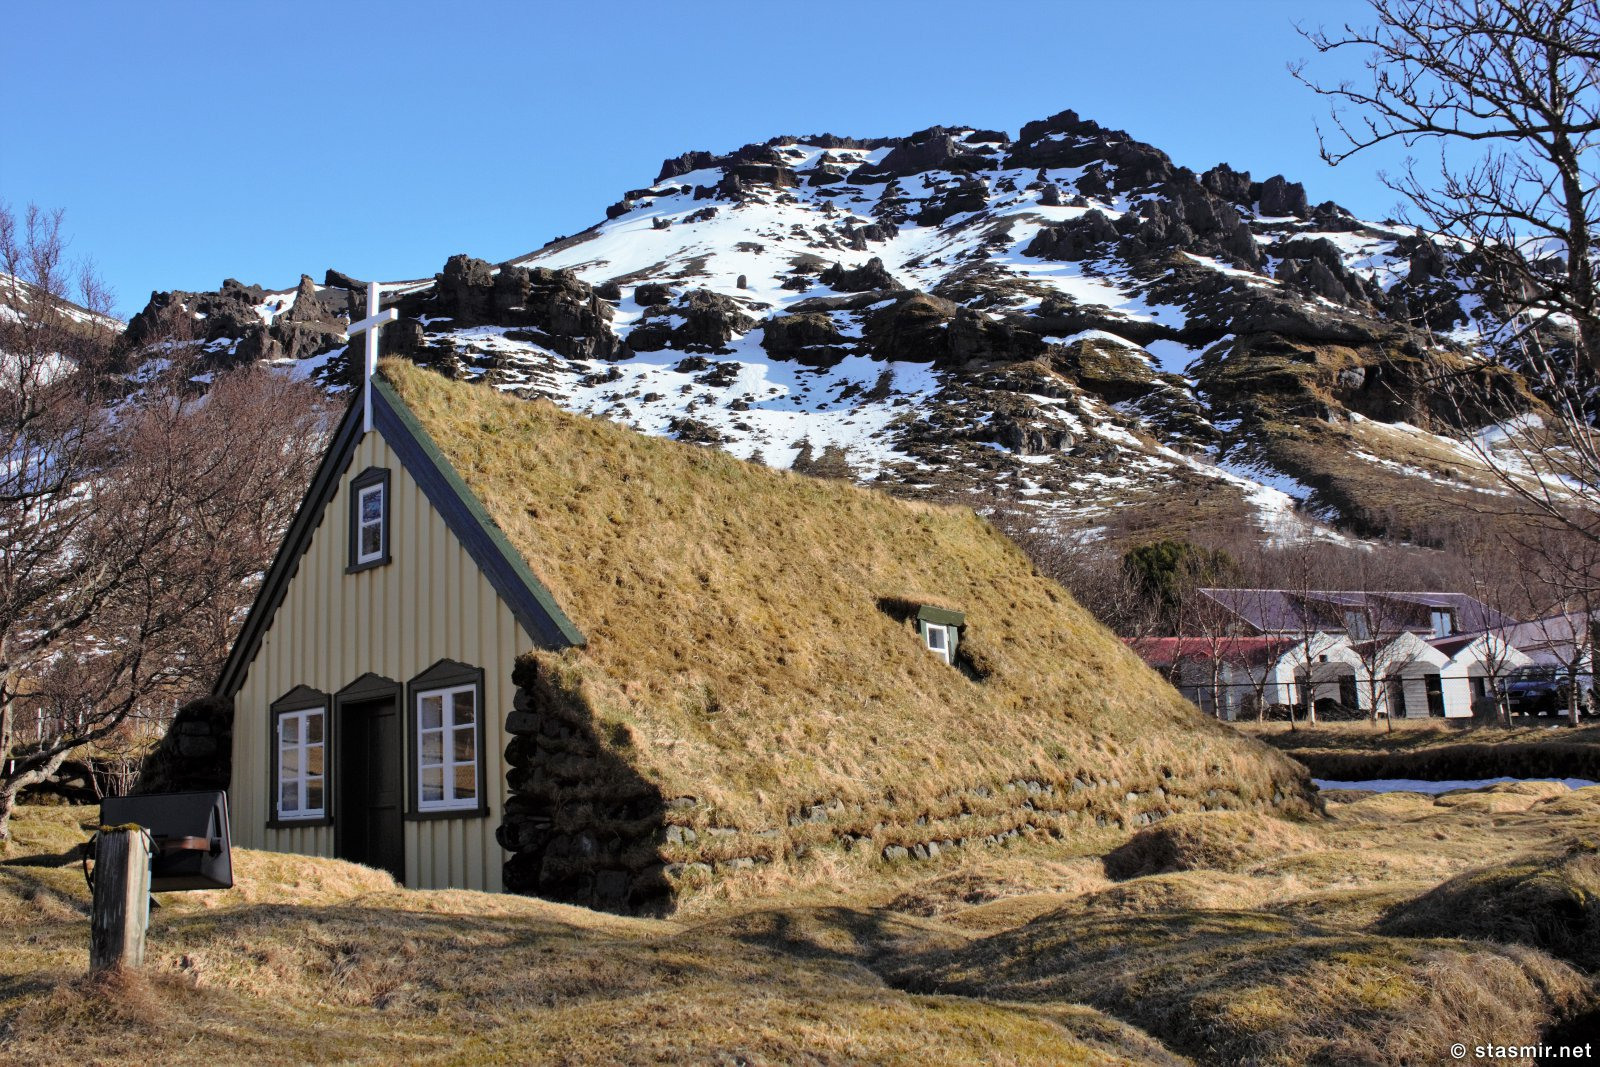 спасенная церковь в Хоф, Восточная Исландия, фото стасмир, photo Stasmir